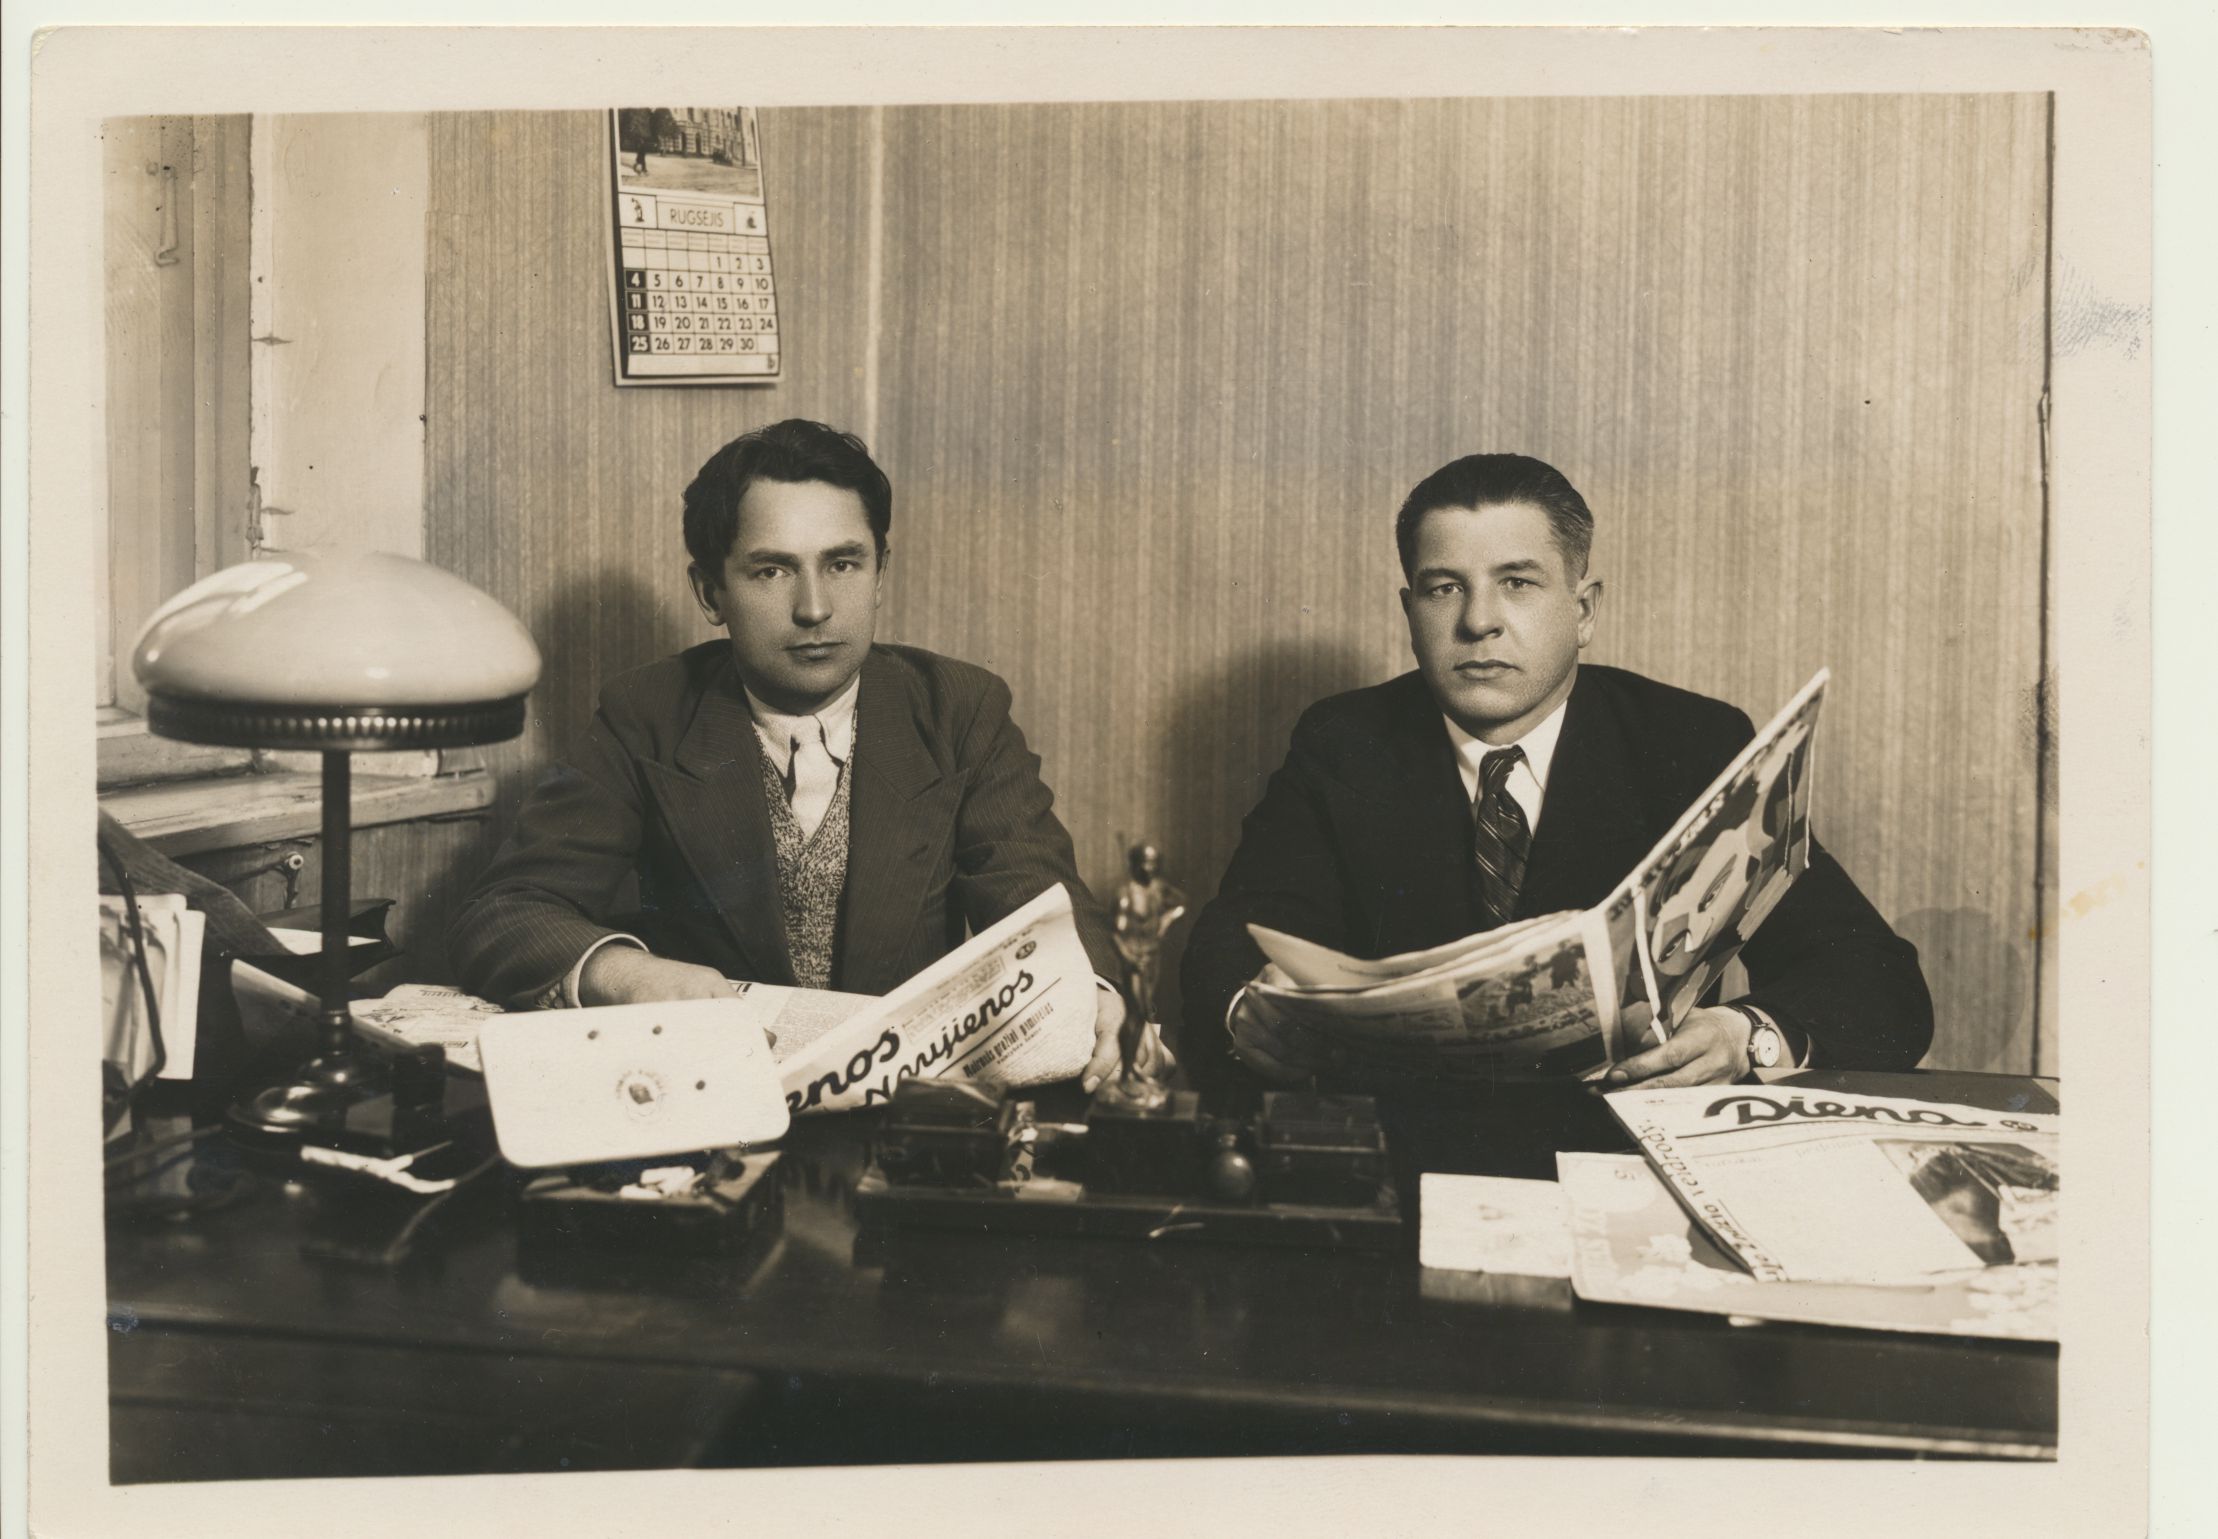 J. Petrėnas, „Dienos“ redaktorius, su A. Bieliūnu. 1933 m.